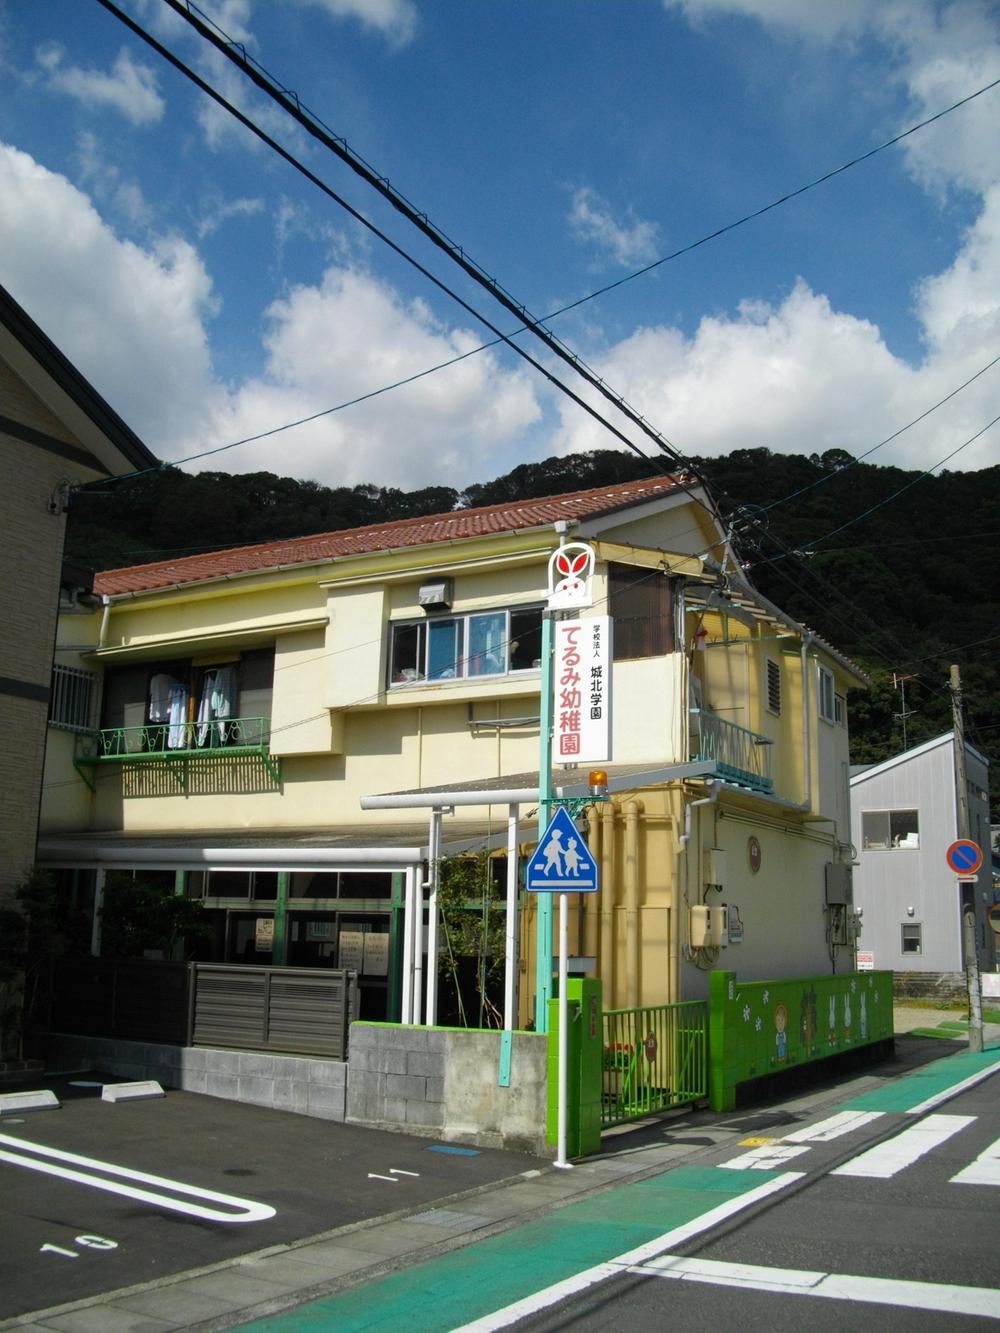 kindergarten ・ Nursery. Terumi 822m to kindergarten